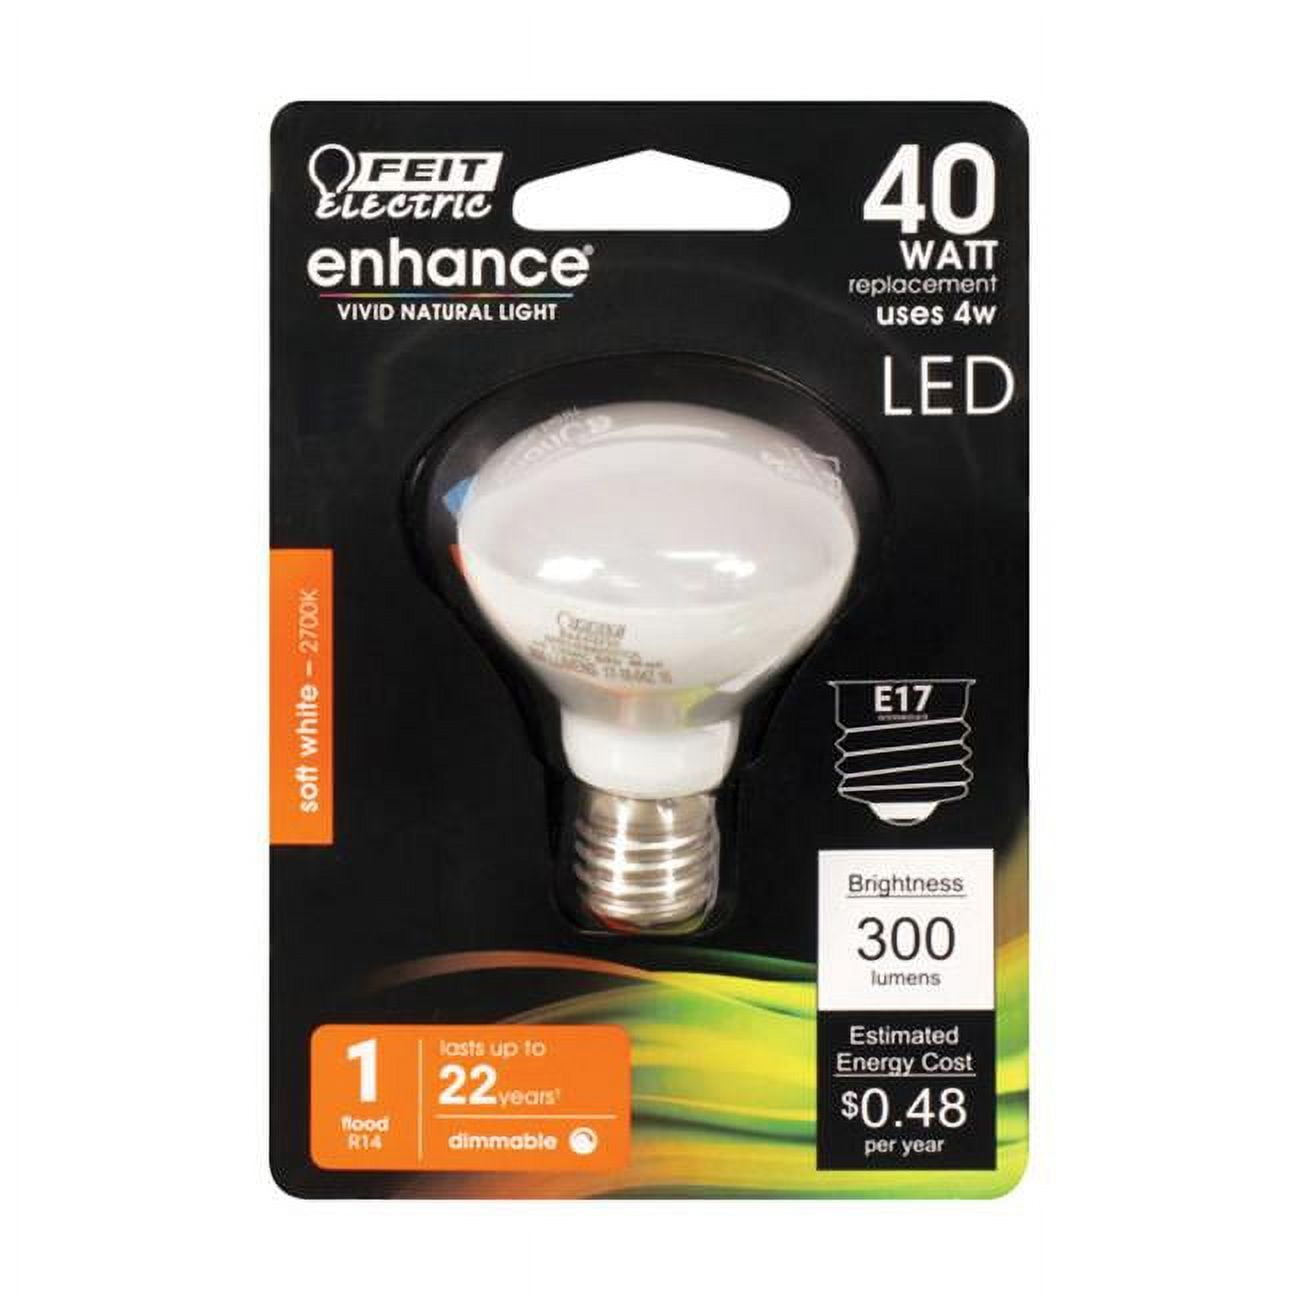 3914660 Enhance 4w R14 Led Bulb, 300 Lumens - Soft White, Pack Of 4